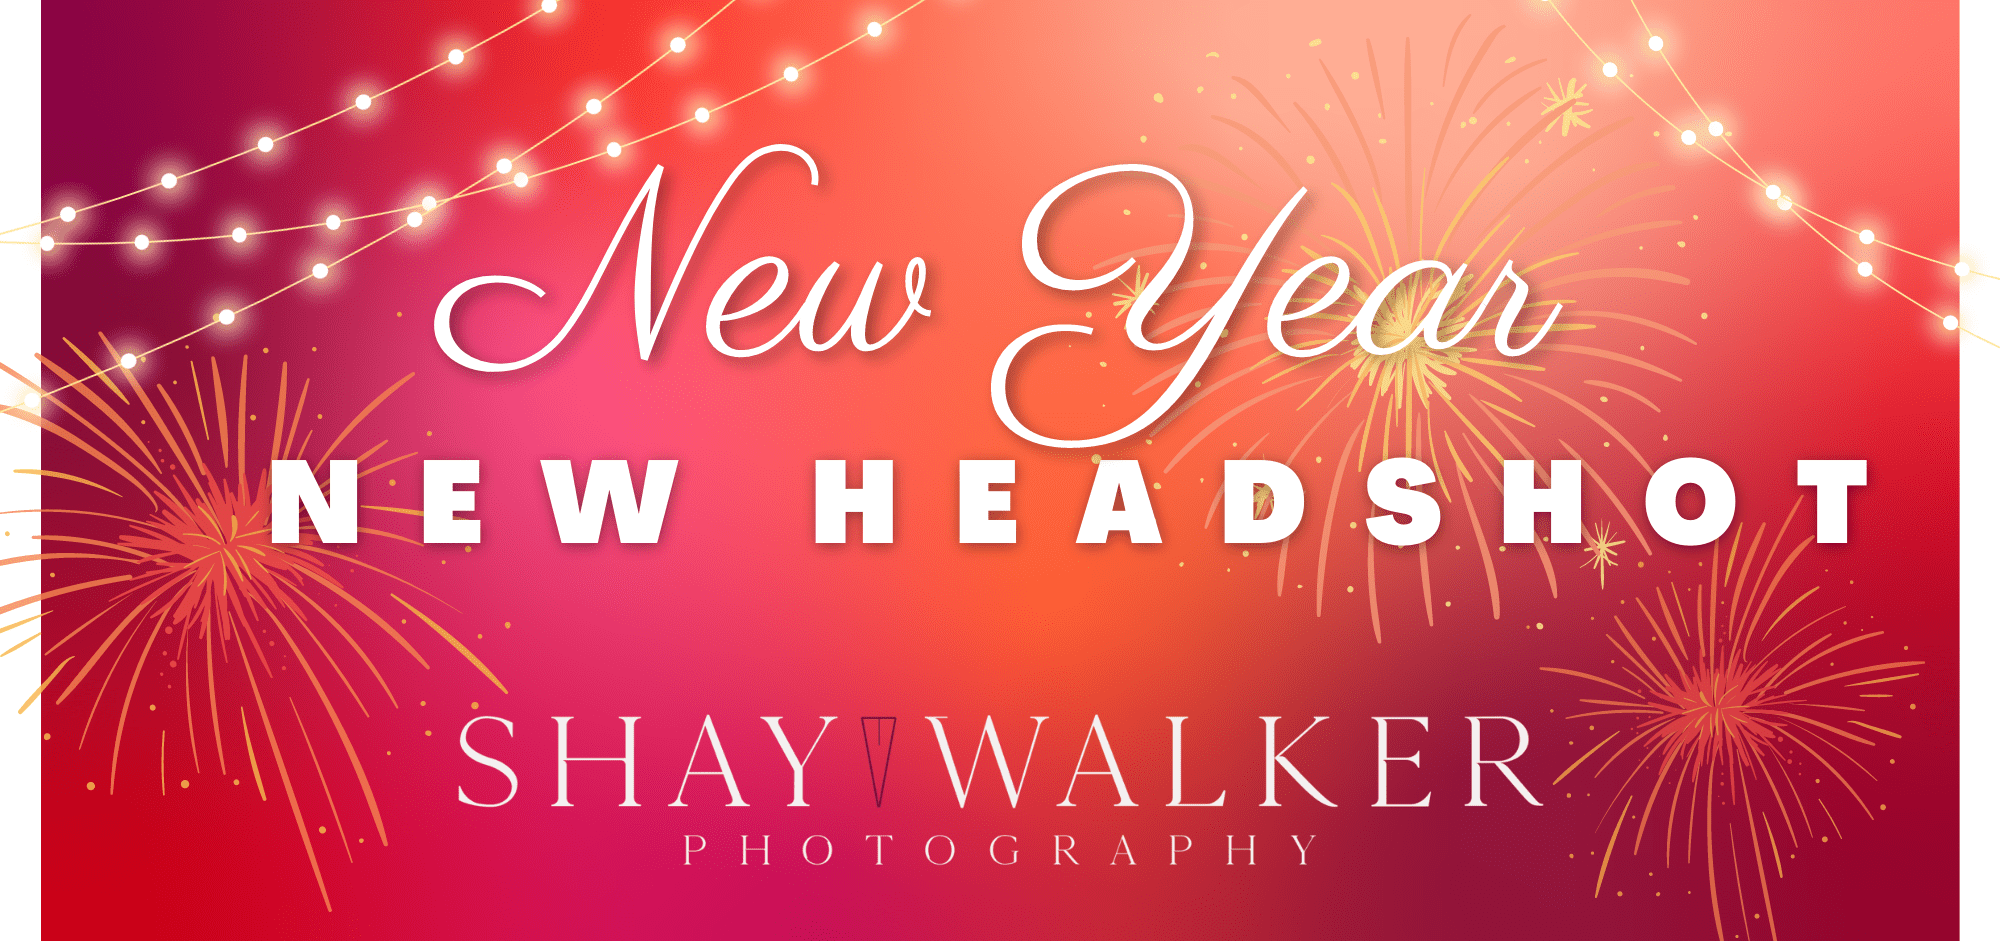 New Year - New Headshot!